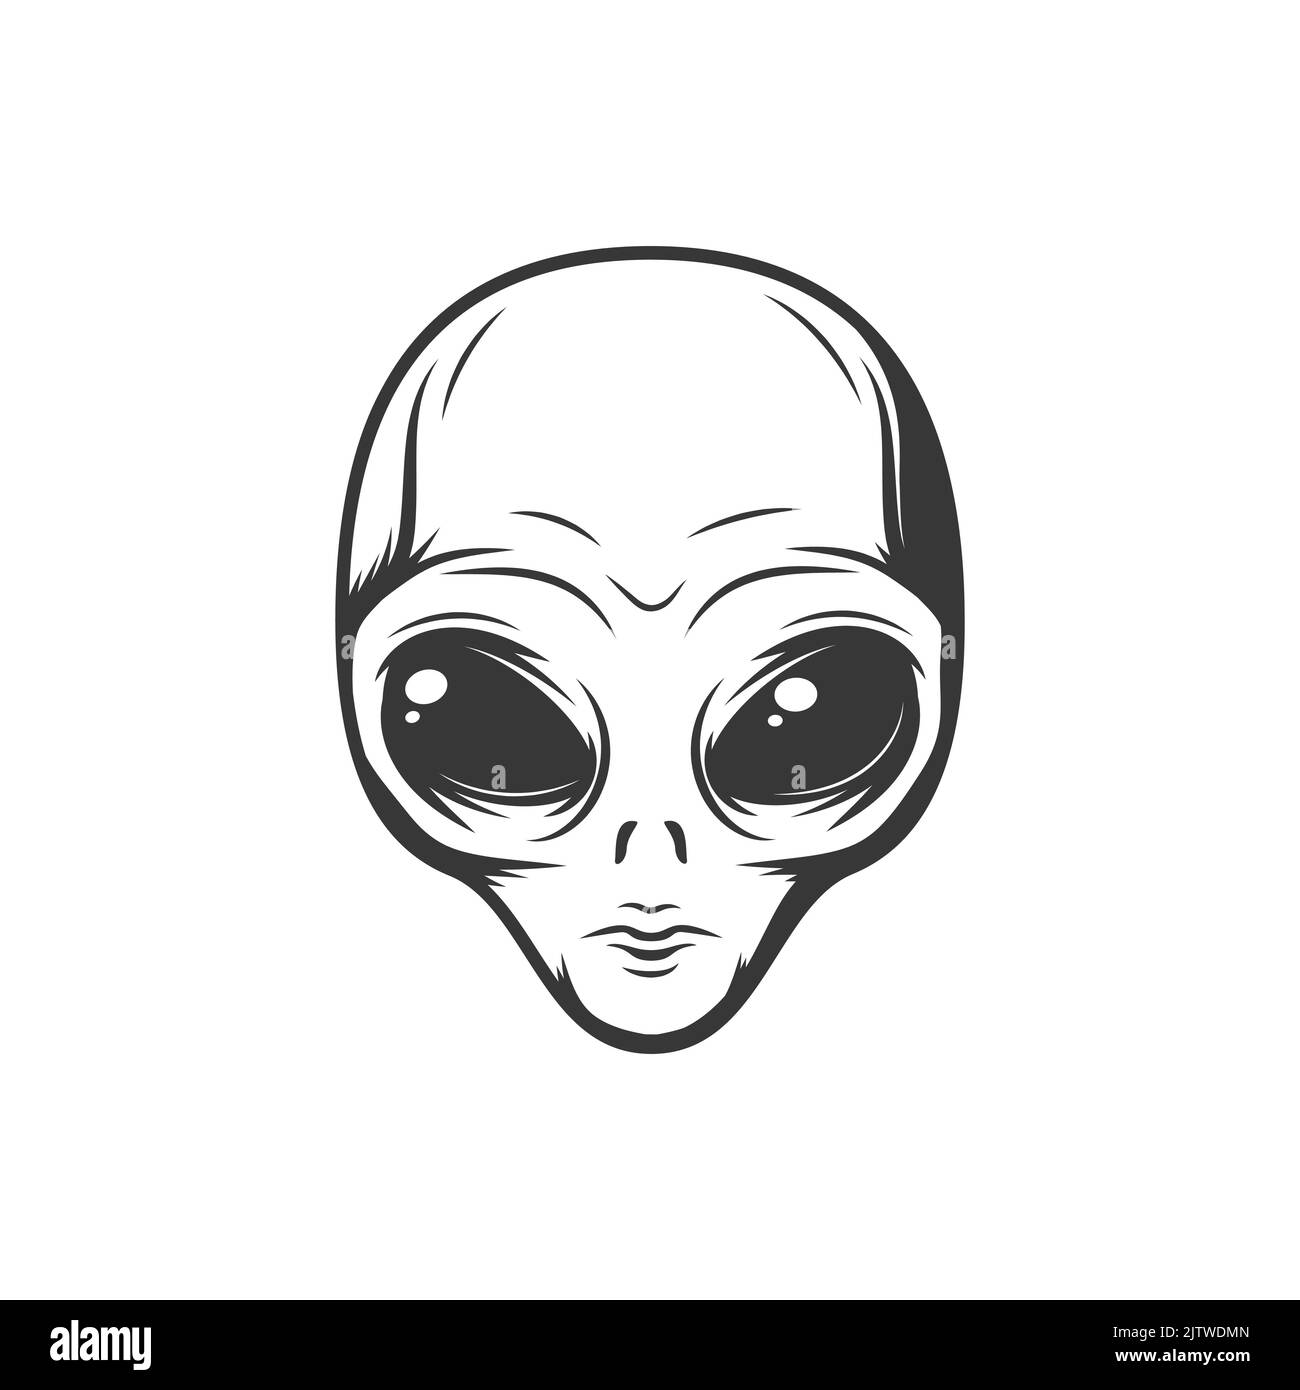 Gesicht von außerirdischen Alien isoliert futuristische paranormal humanoide monochrome Ikone. Vector Person aus hypothetischem Leben, kosmische Zivilisationen Charakter. Oberraum Kreatur mit großen schwarzen Augen Stock Vektor